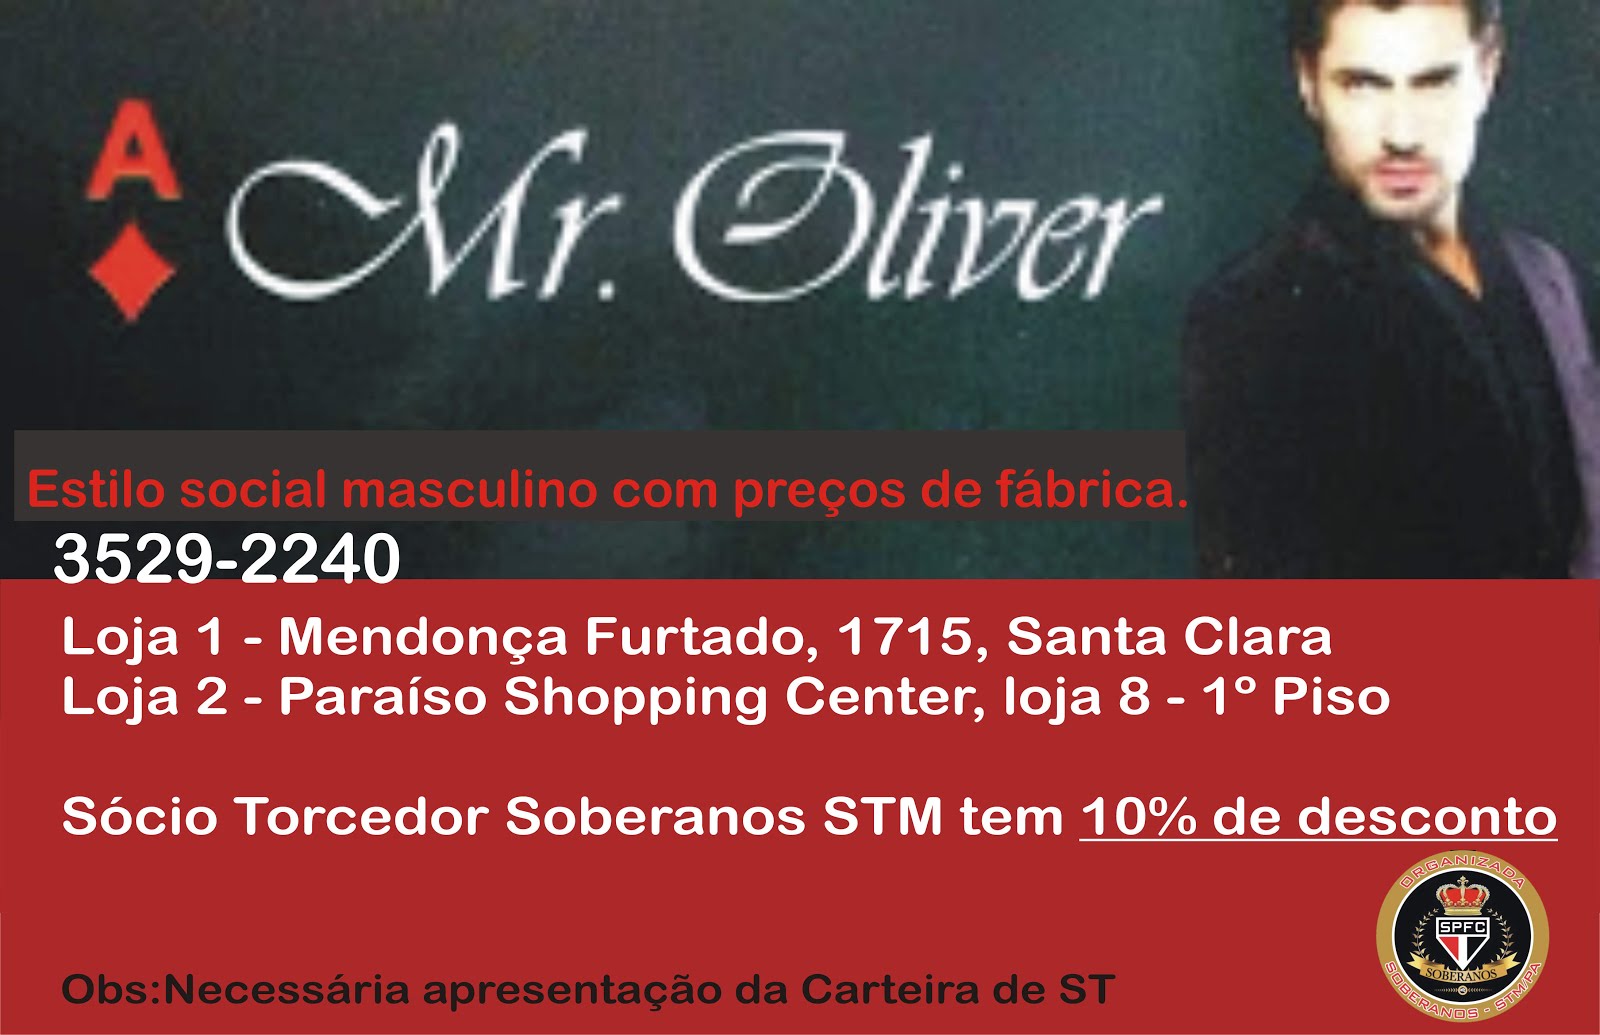 Mr. Oliver